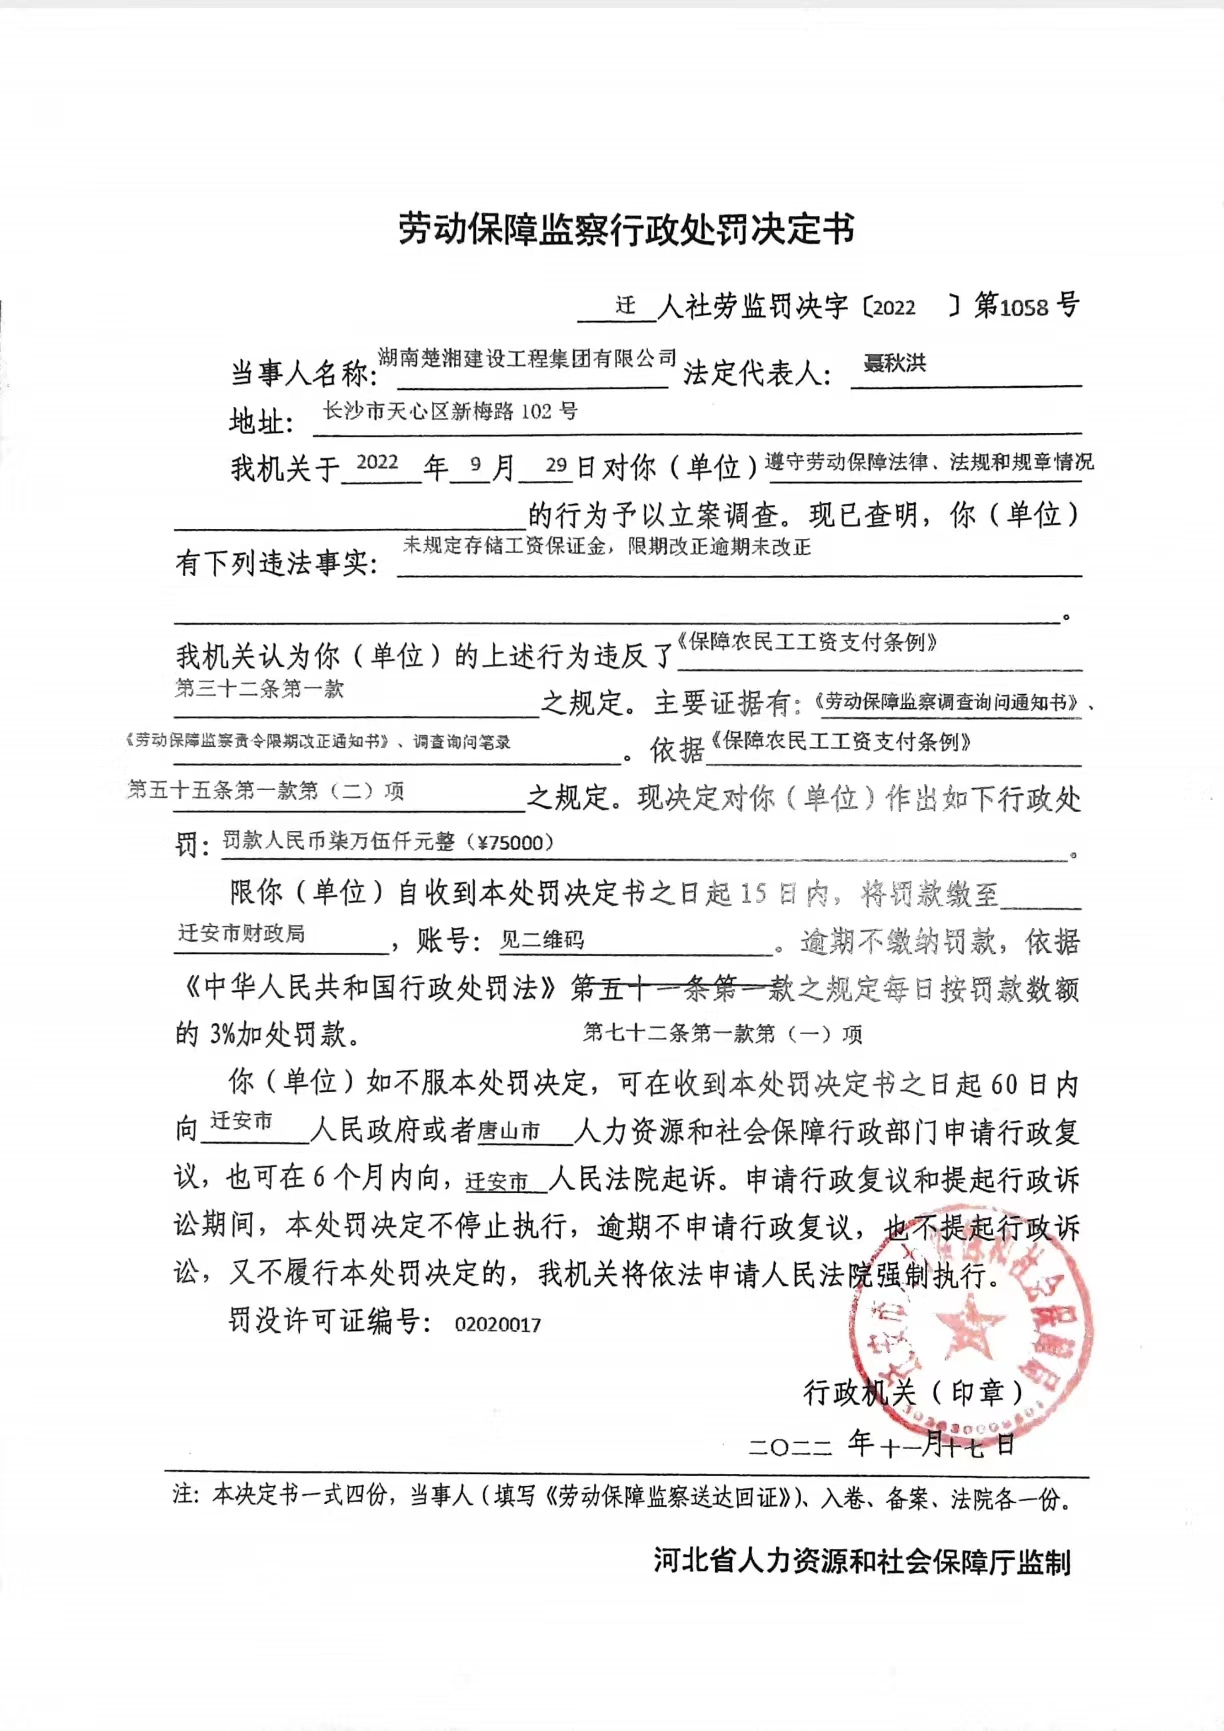 湖南楚湘建设工程集团有限公司处罚决定书.jpg